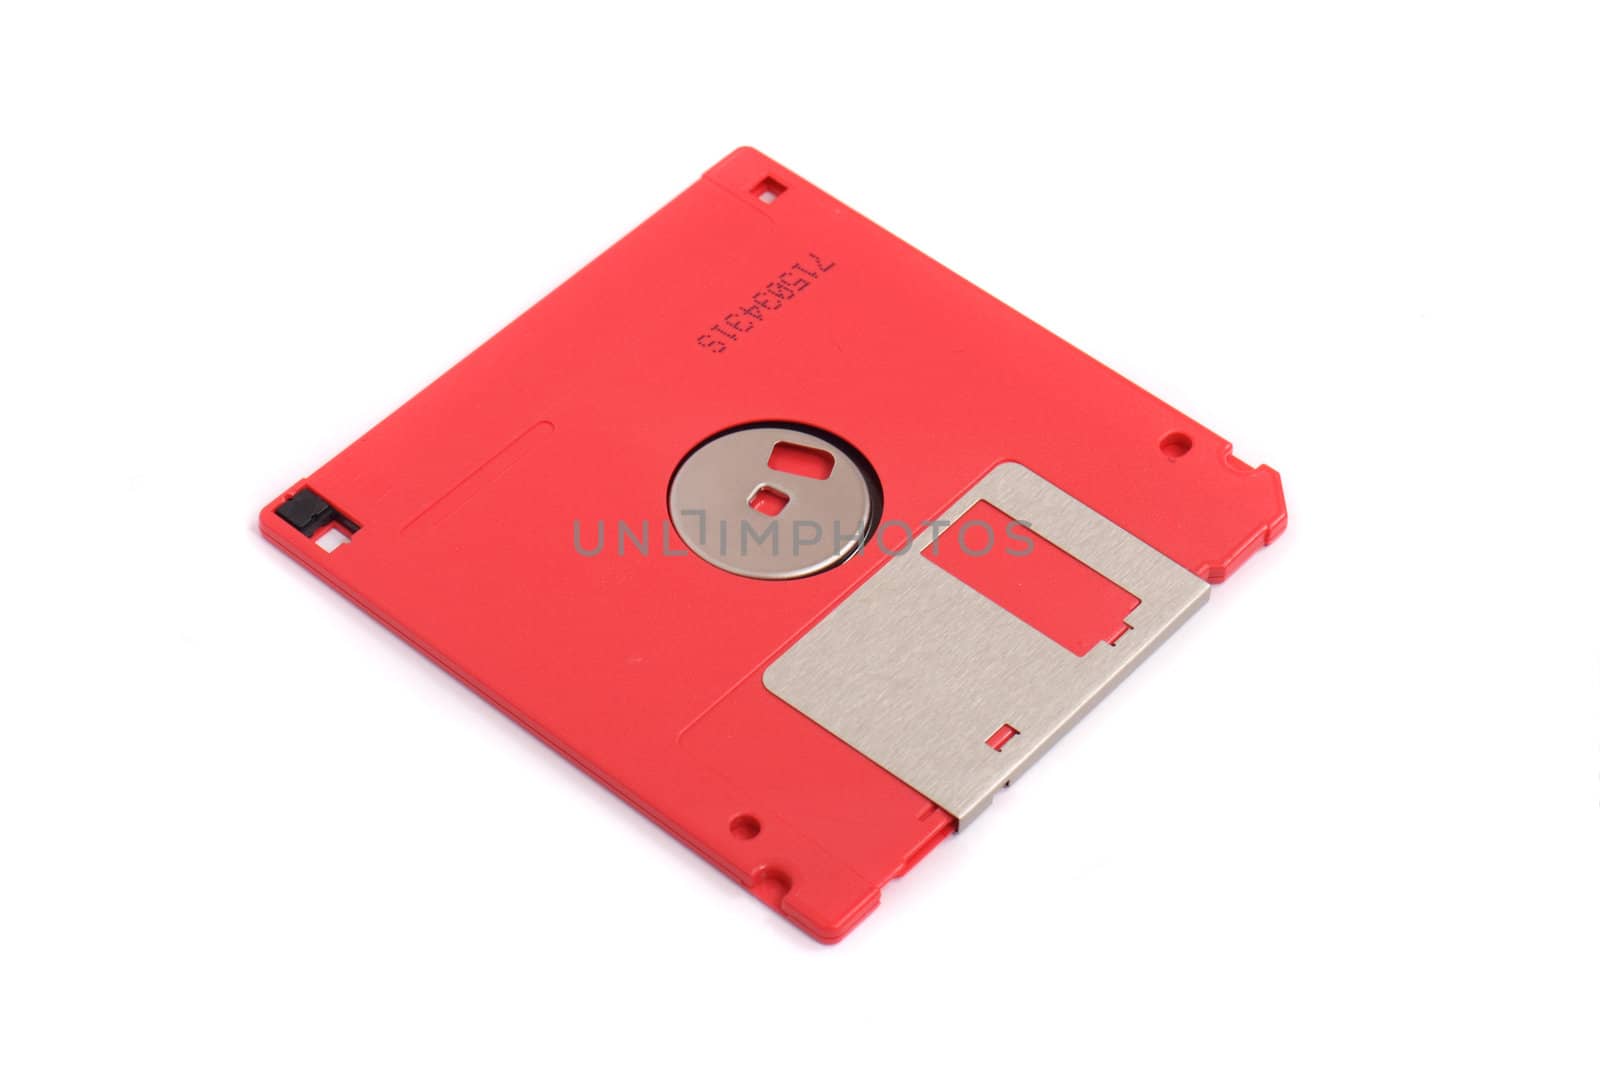 floppy disk by jonnysek